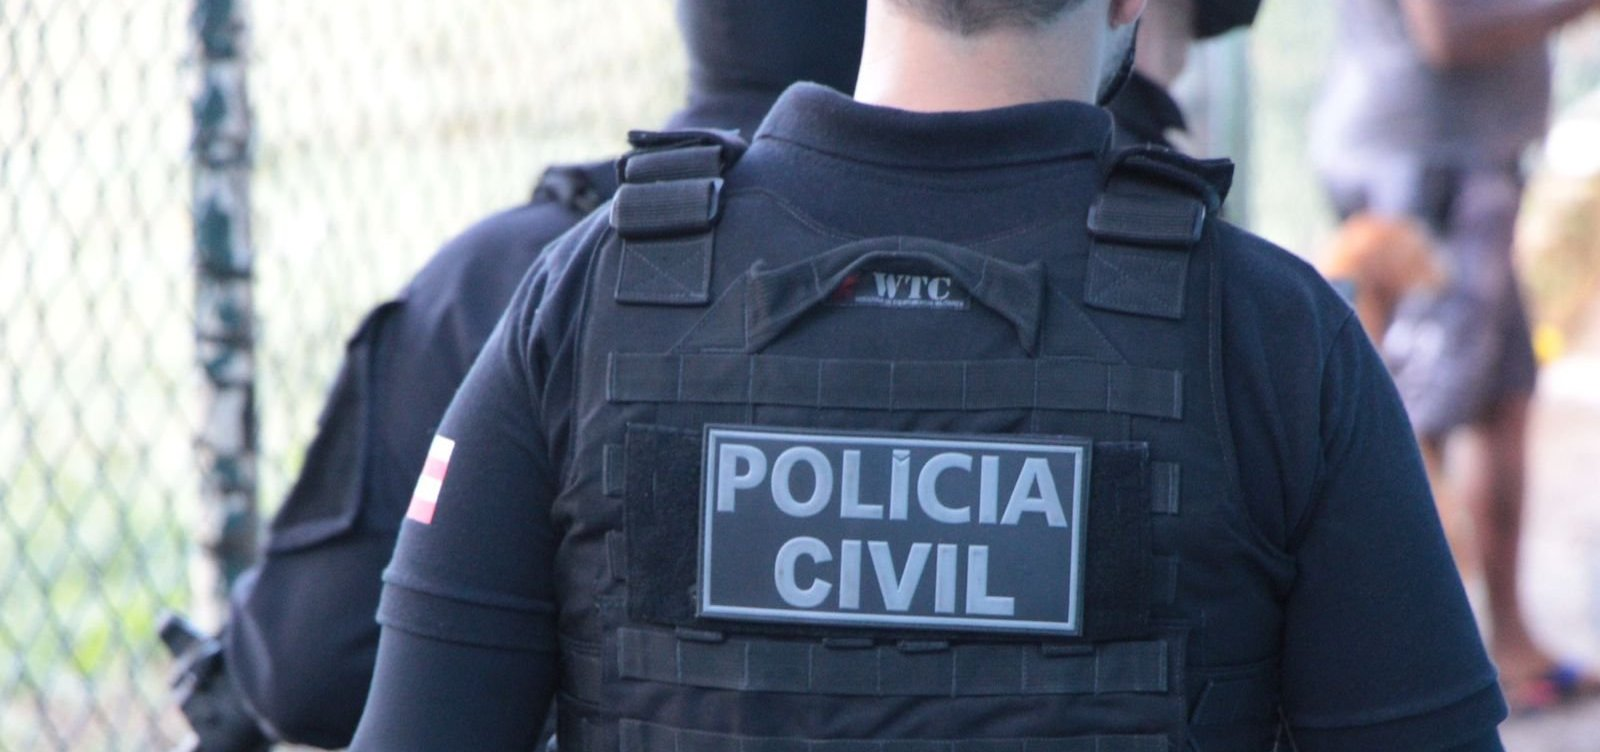 Policias civis da Bahia vão entrar em greve a partir da proxima sexta-feira (25)